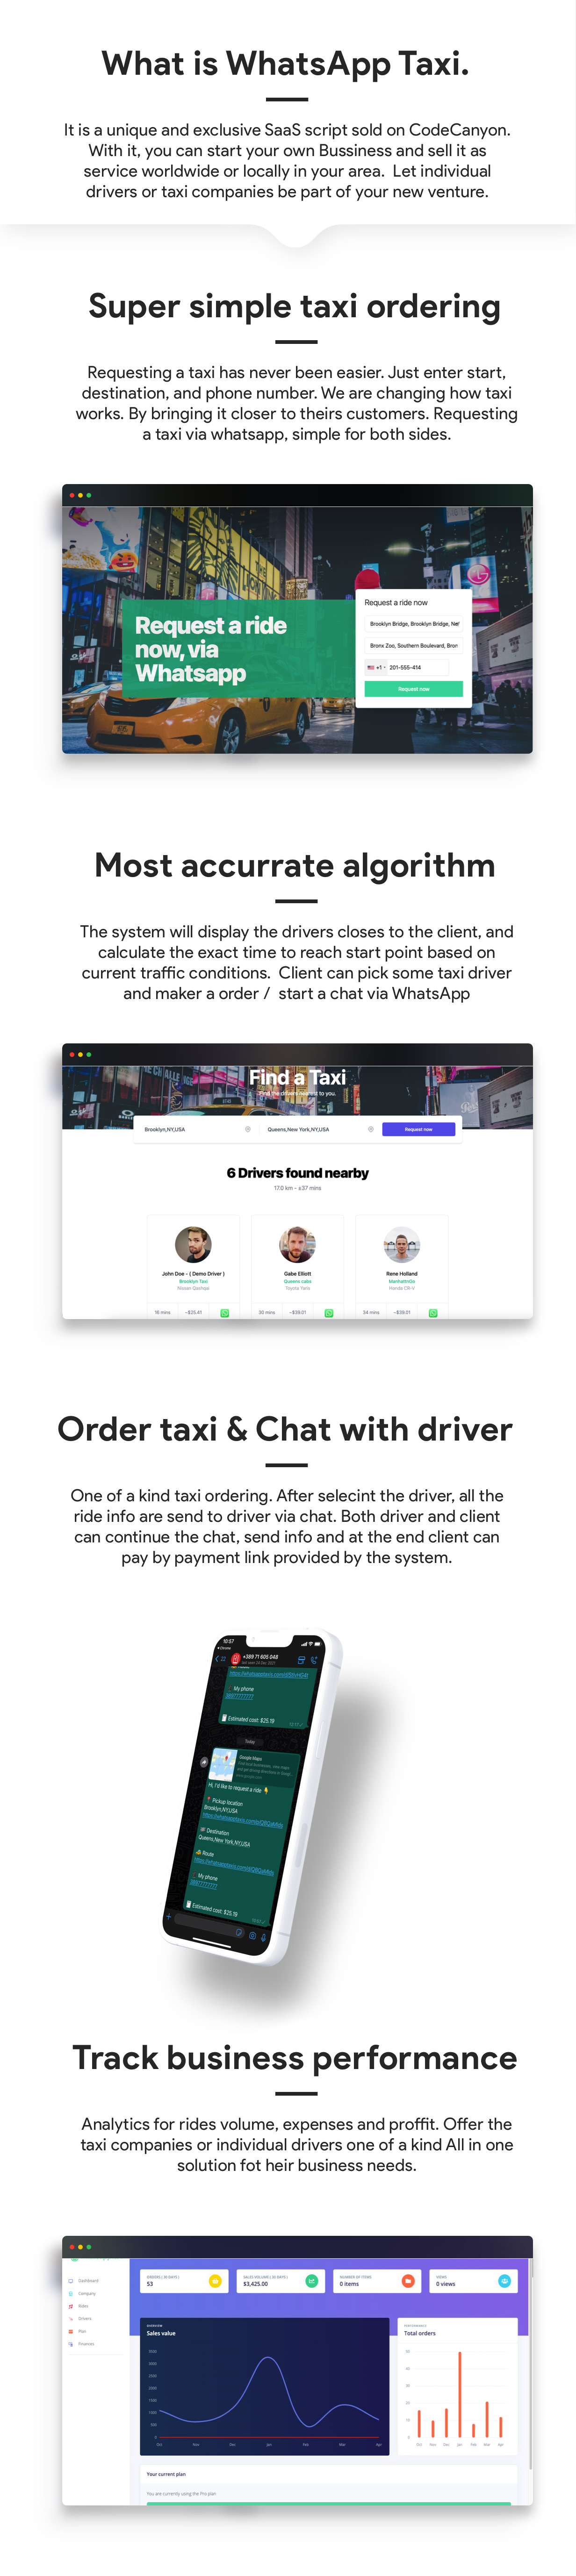 WhatsApp Taxi - SaaS  taxi ordering via WhatsApp - 5